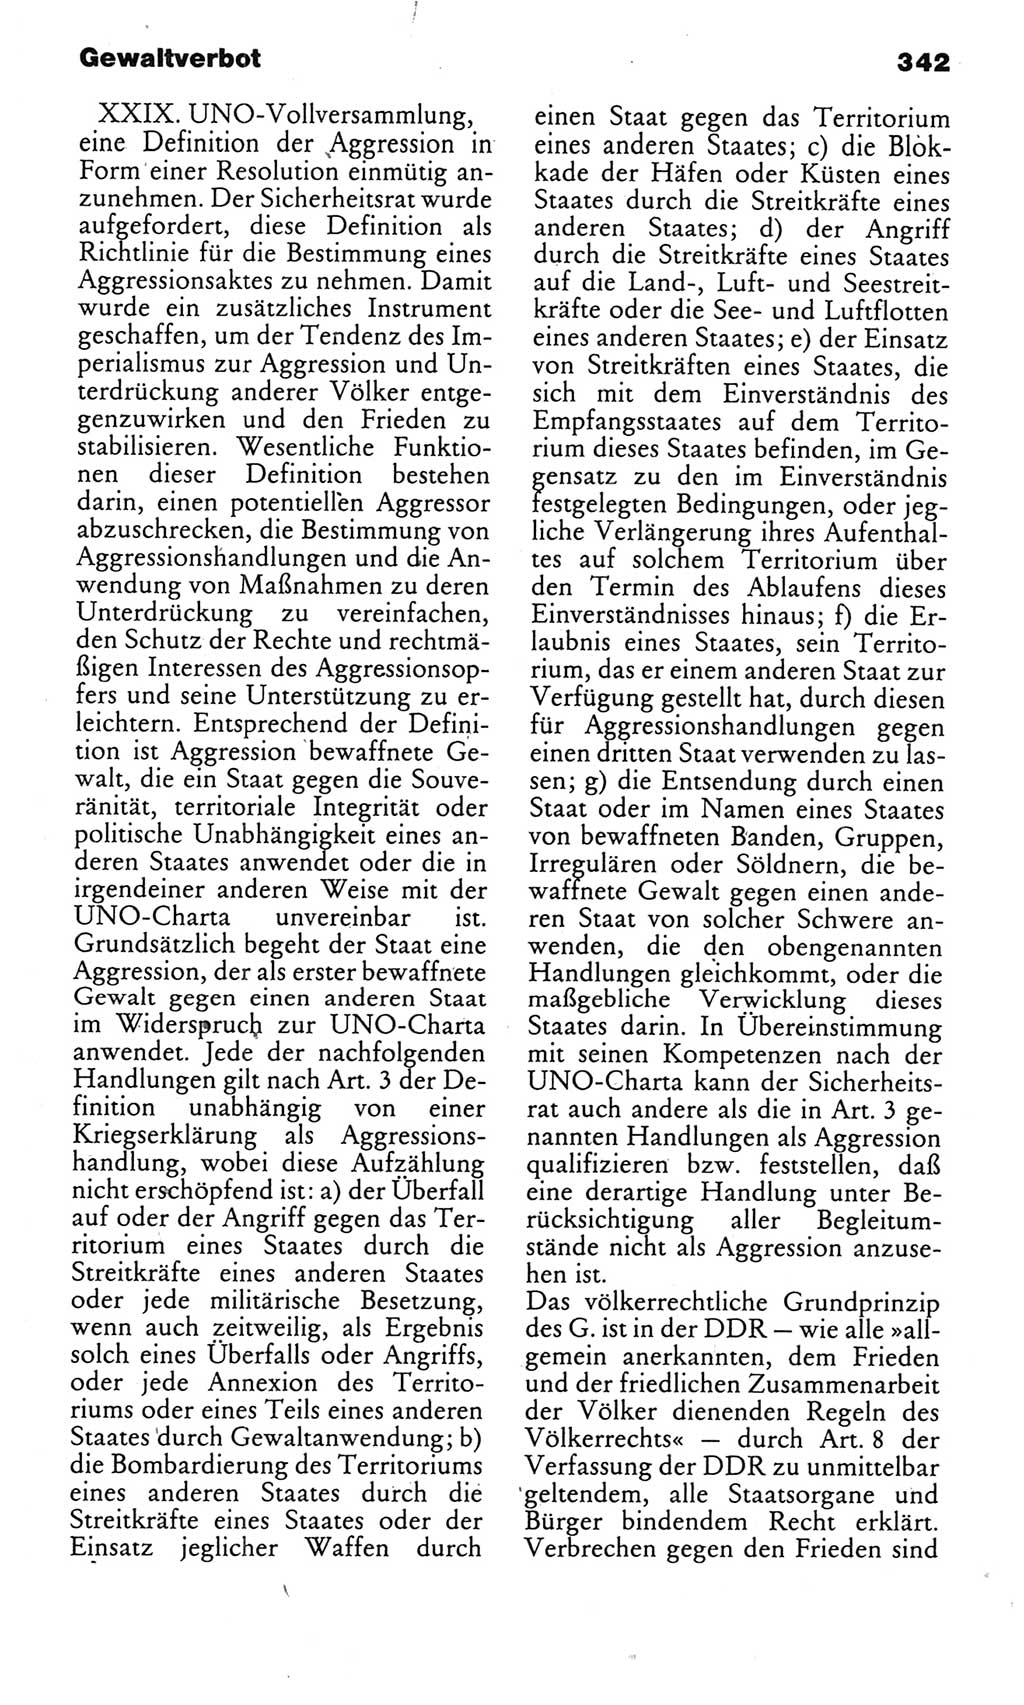 Kleines politisches Wörterbuch [Deutsche Demokratische Republik (DDR)] 1985, Seite 342 (Kl. pol. Wb. DDR 1985, S. 342)